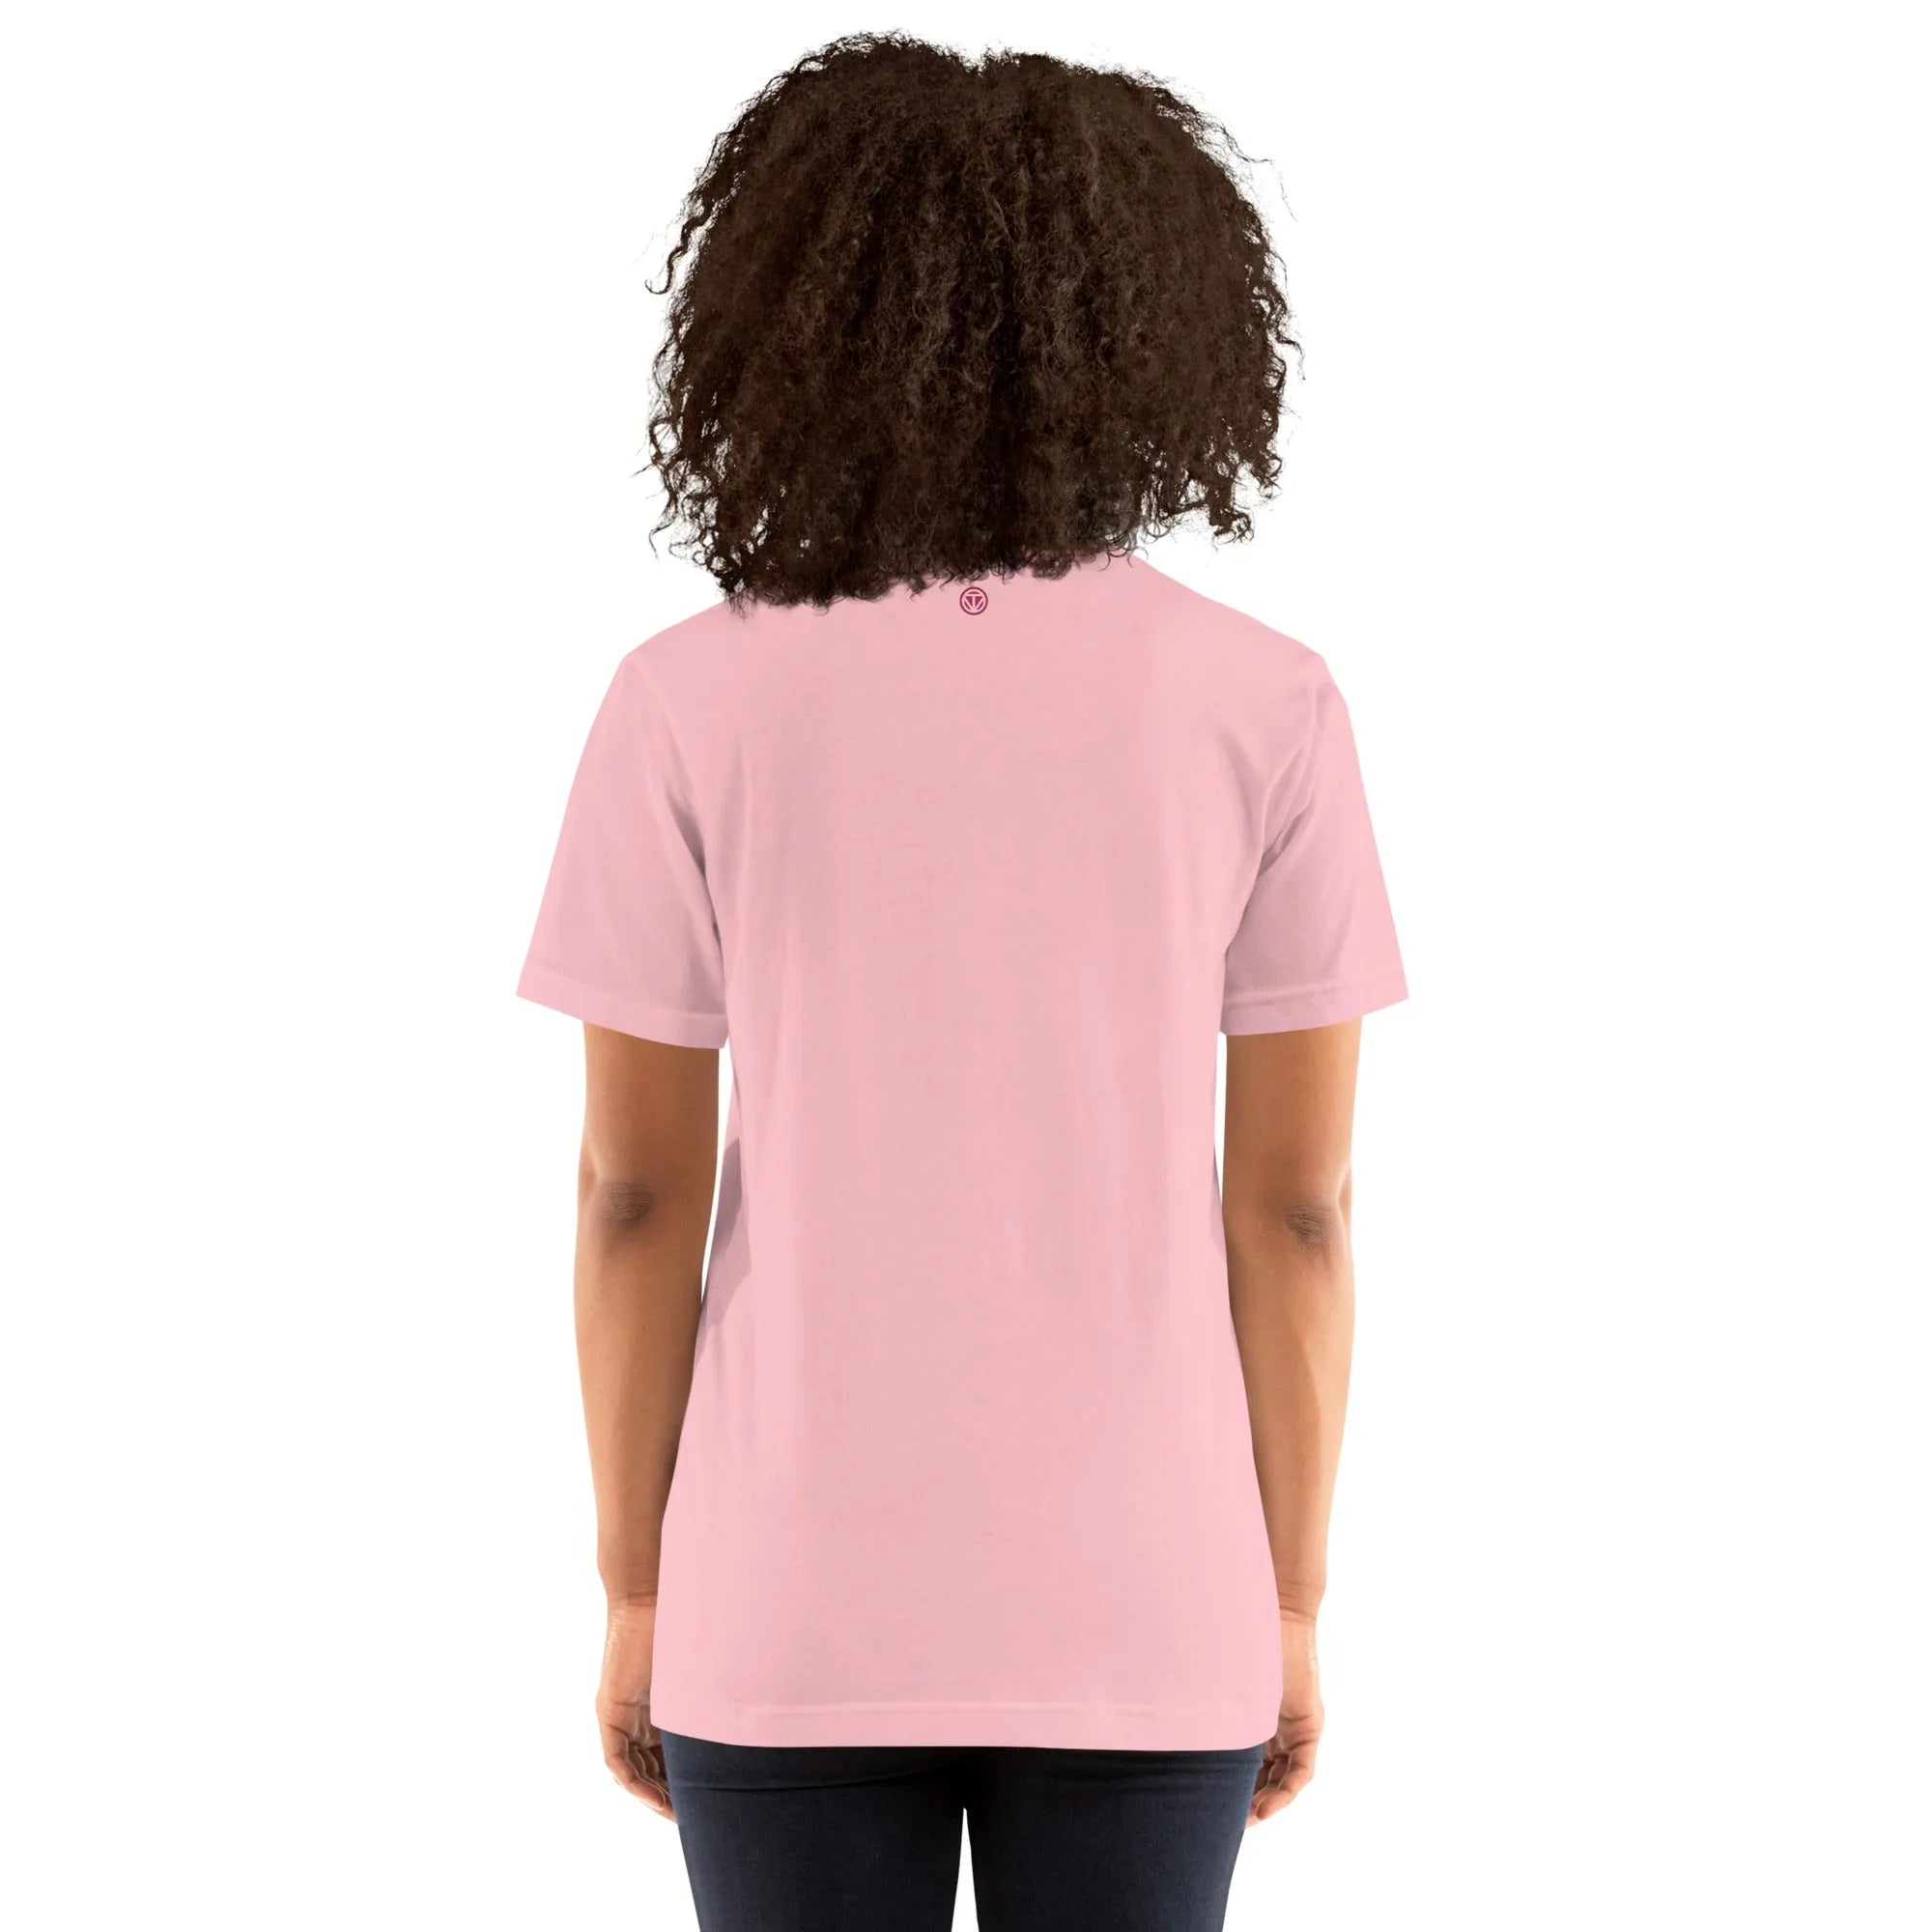 T-shirt en coton pour femme VIBES  (rose)